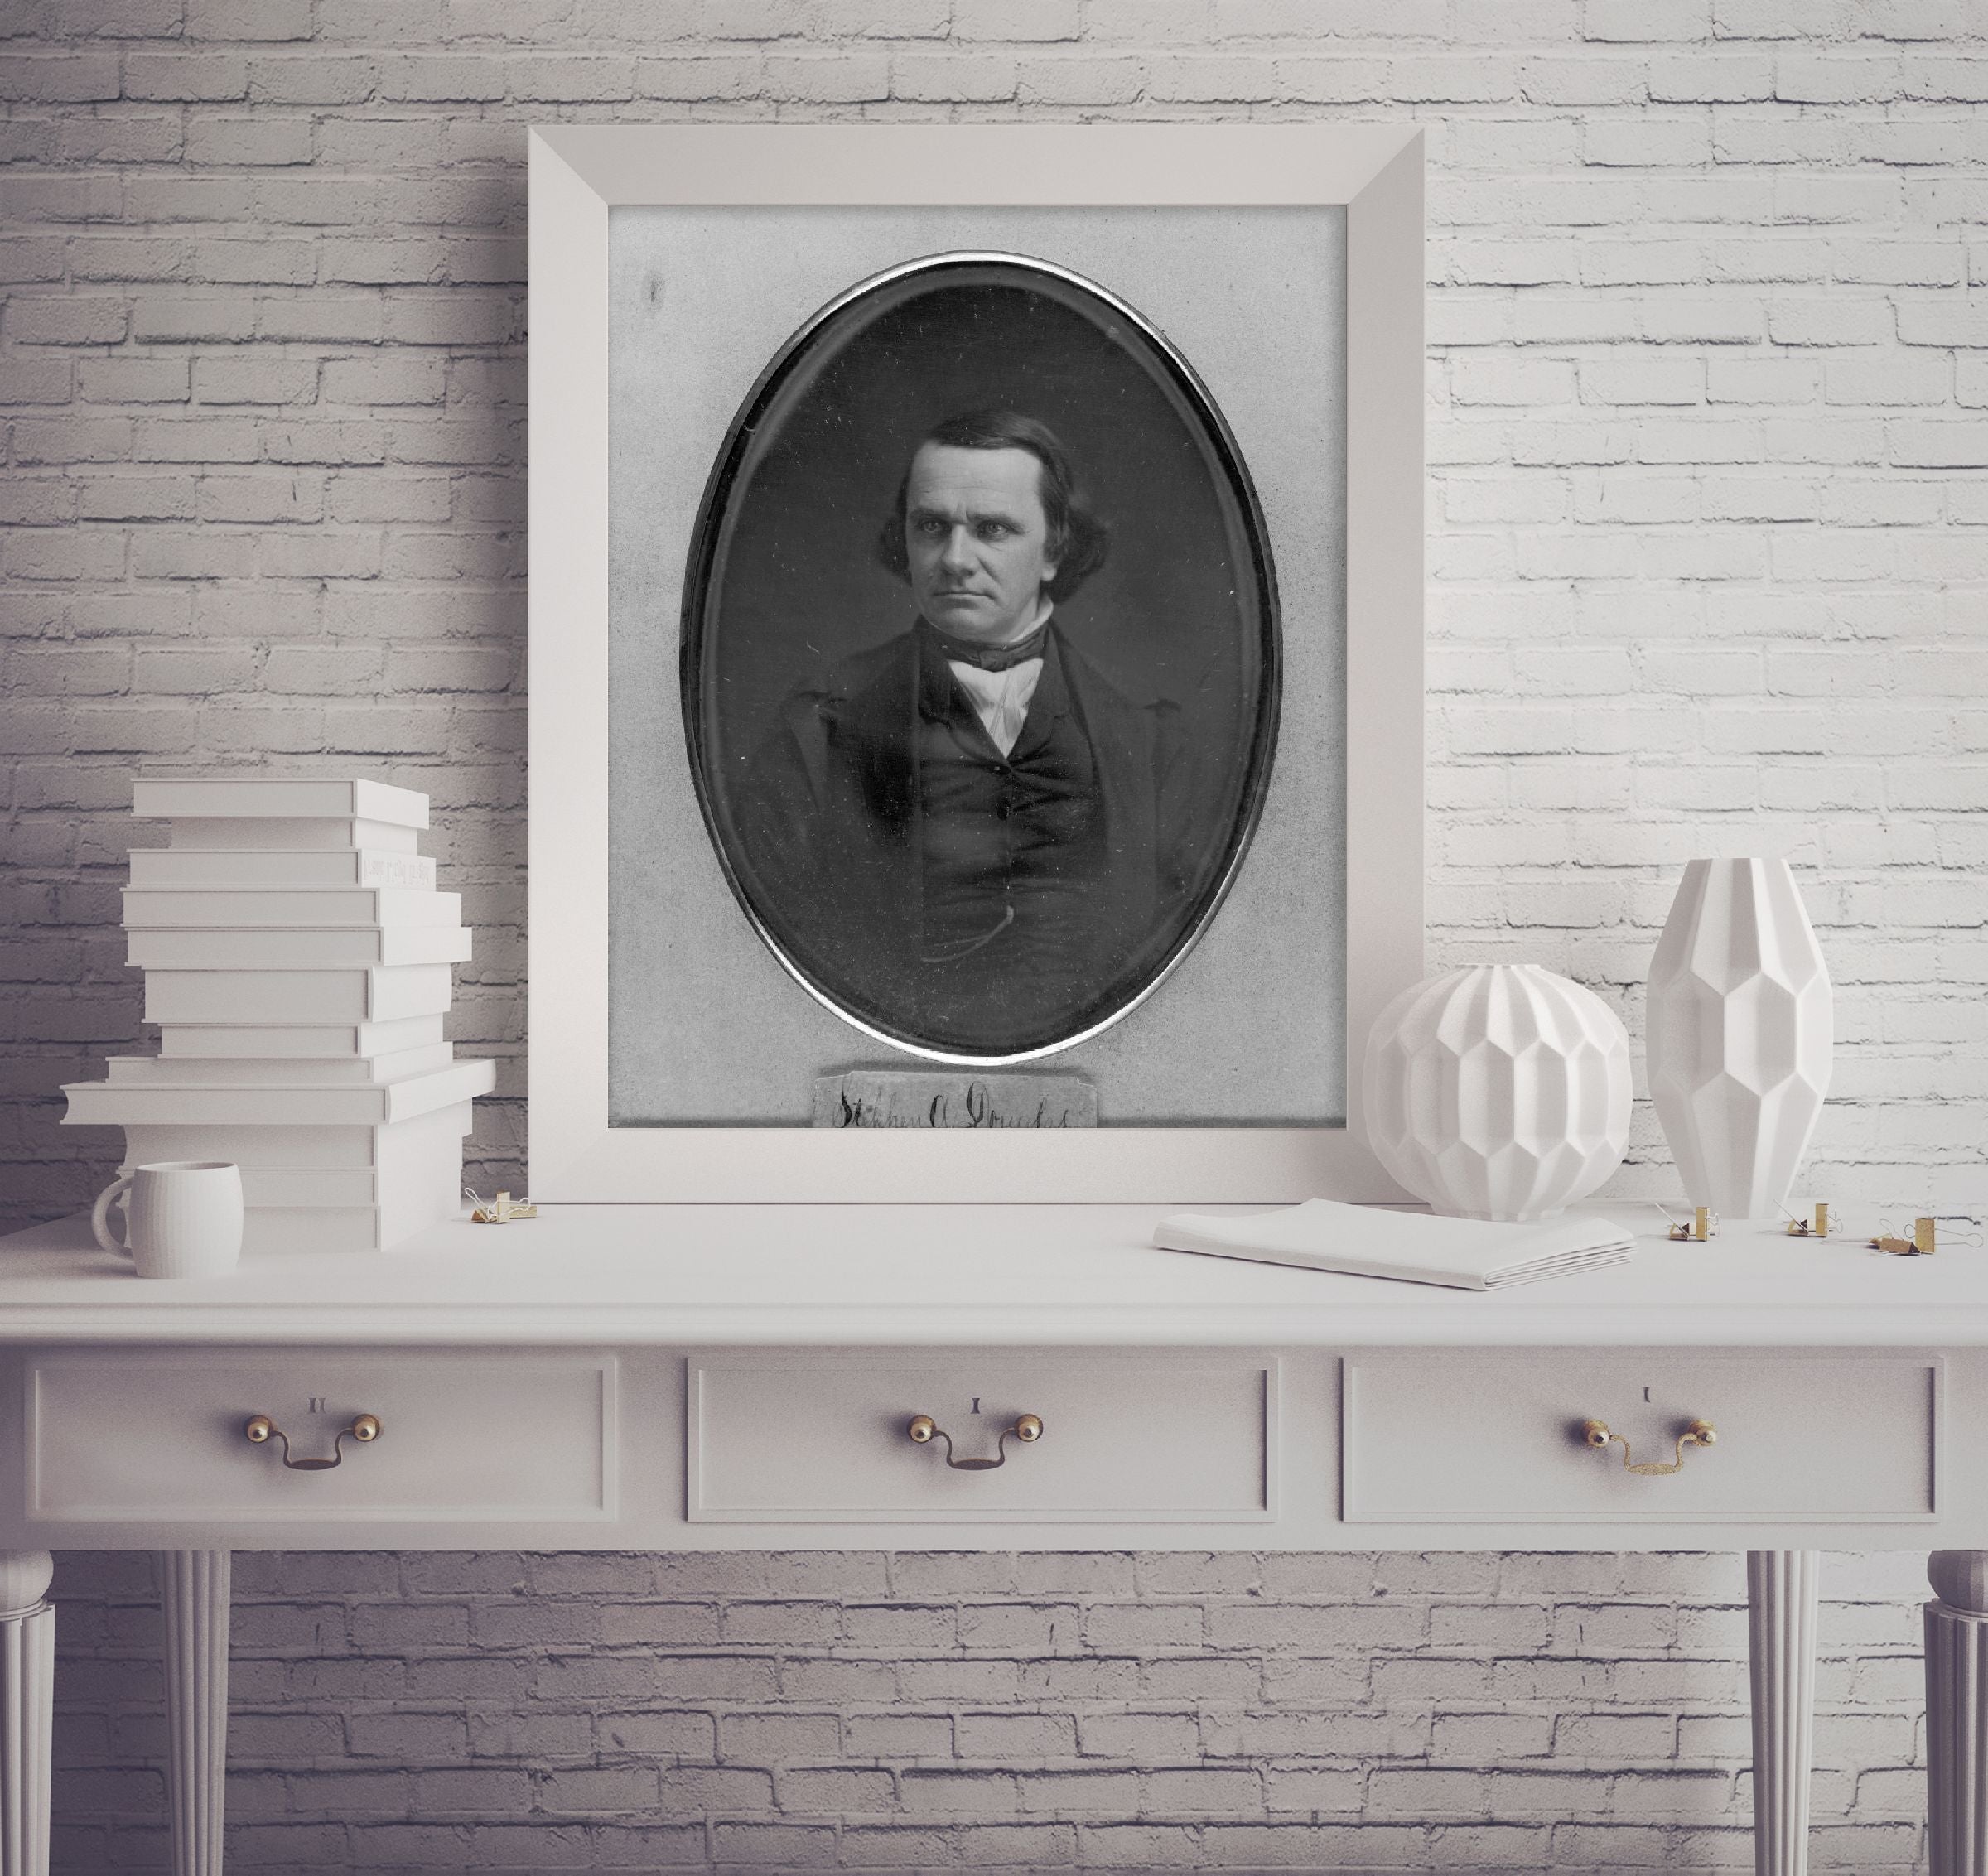 Photo: Stephen Arnold Douglas, 1813-1861, American politician from Illinois, IL,